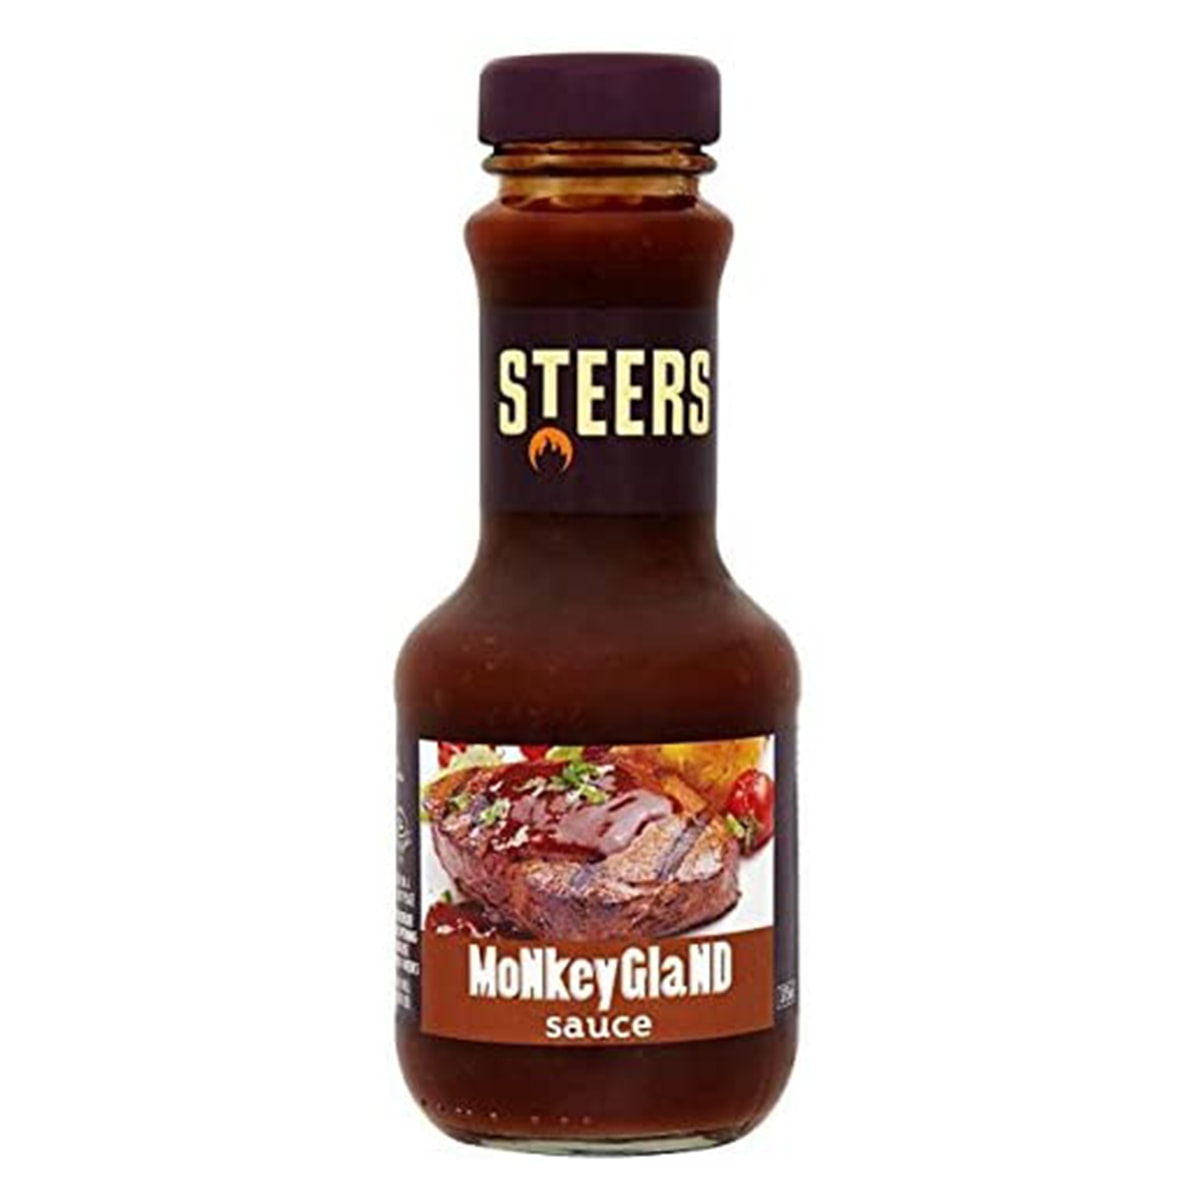 Buy Steers Monkey Gland Sauce - 375 ml